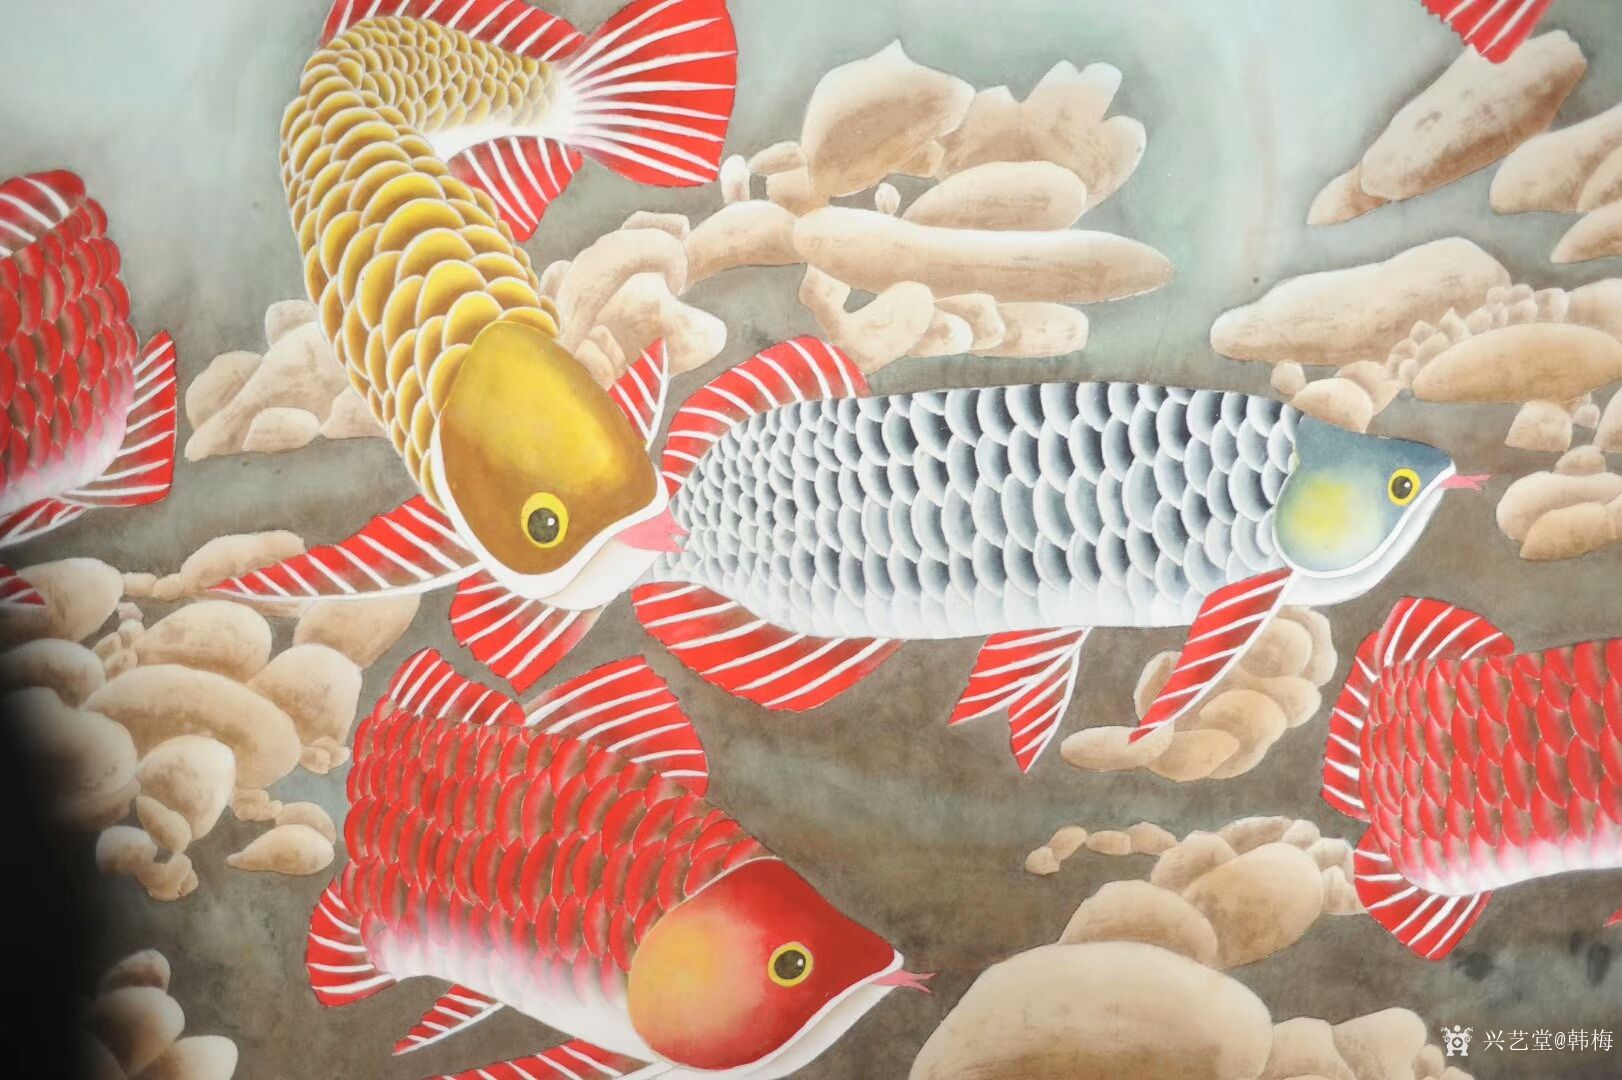 韩梅日记:国画工笔画鱼系列作品《金龙鱼》